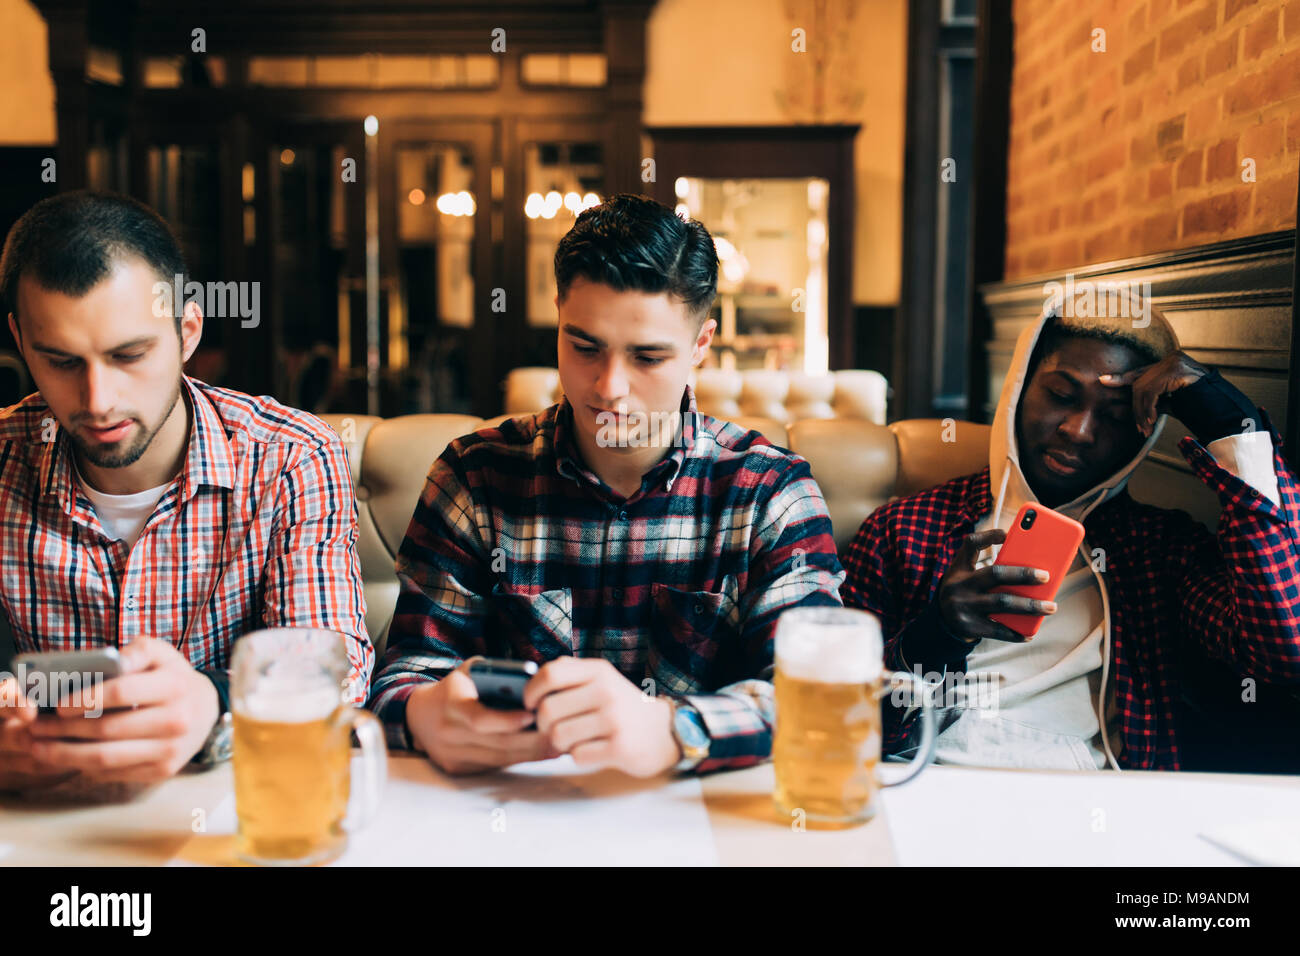 Menschen Manner Freizeit Freundschaft Und Technologie Konzept Mannlichen Freunde Mit Smartphones Biertrinken In Bar Oder Kneipe Stockfotografie Alamy